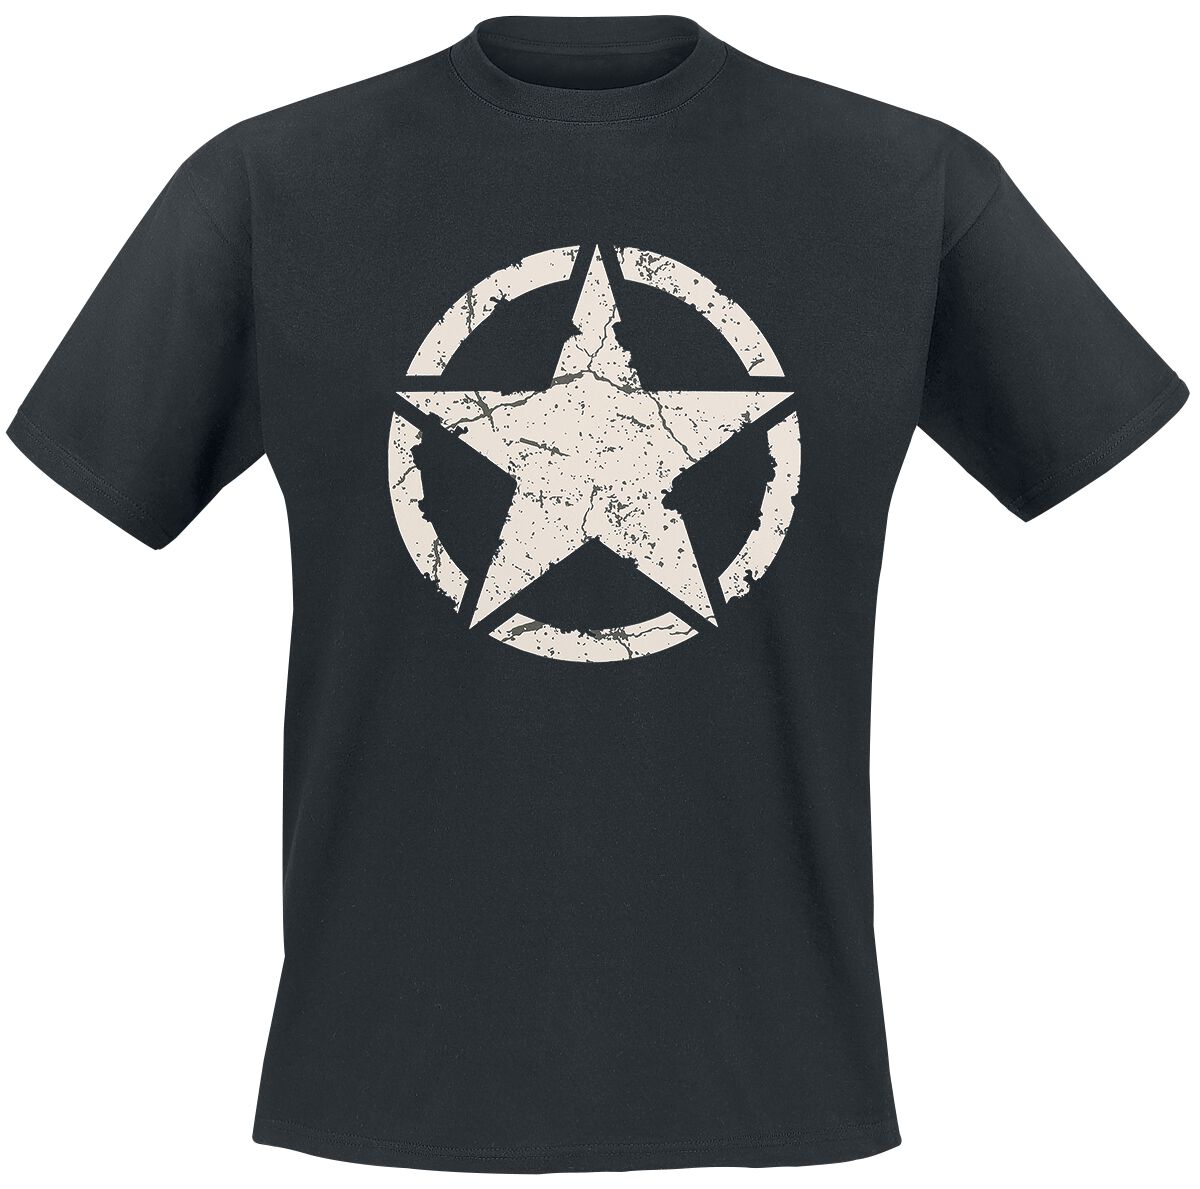 Gasoline Bandit - Rockabilly T-Shirt - Army Star - S bis 4XL - für Männer - Größe S - schwarz